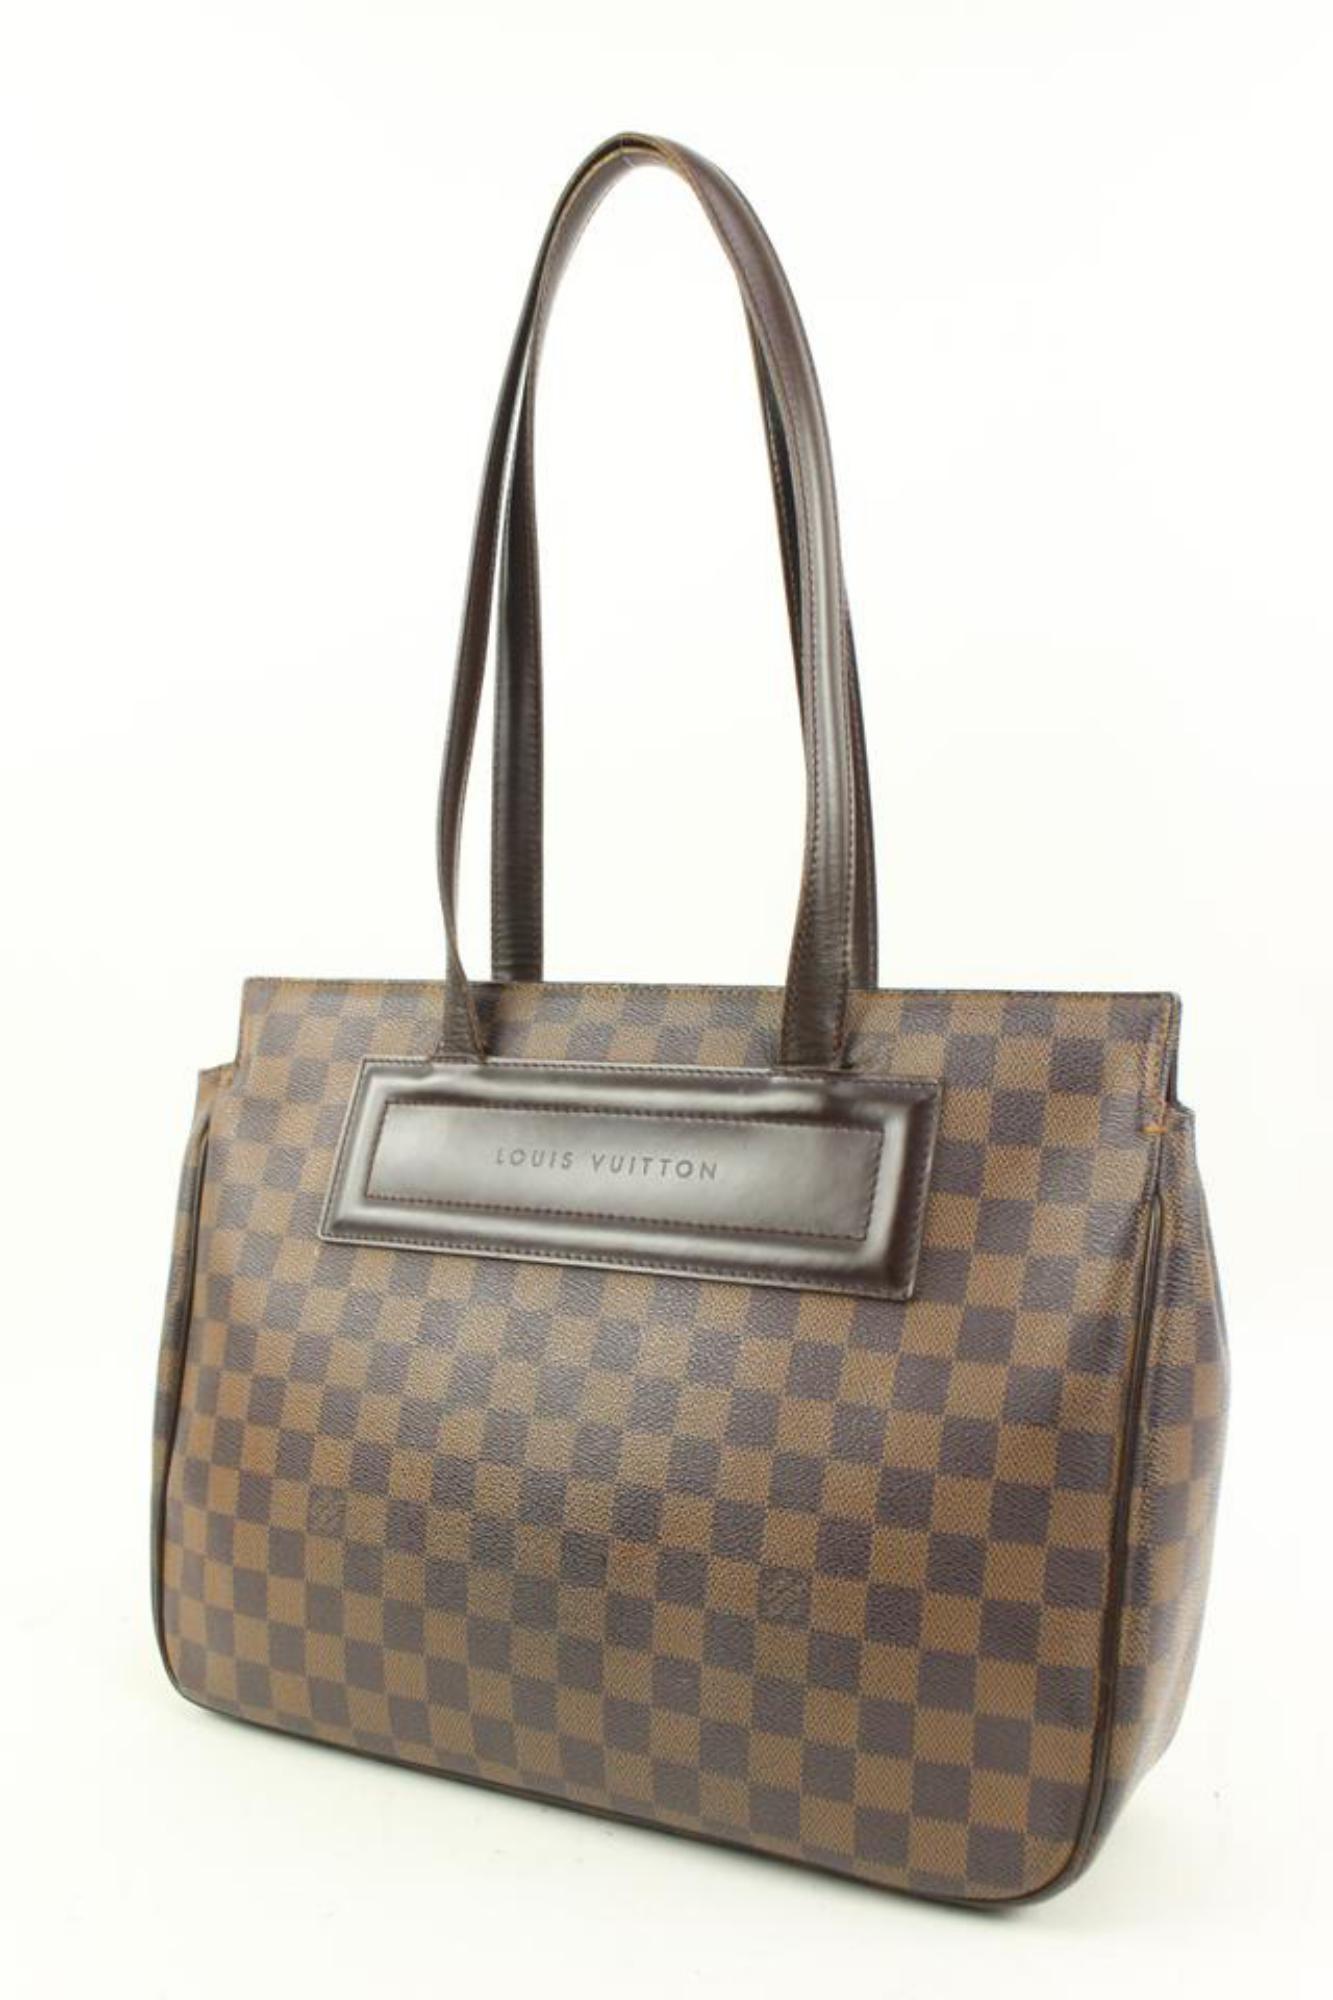 Louis Vuitton Damier Ebene Parioli PM Shopper Einkaufstasche S215lv94
Datum Code/Seriennummer: AR0010
Hergestellt in: Frankreich
Maße: Länge:  13.5